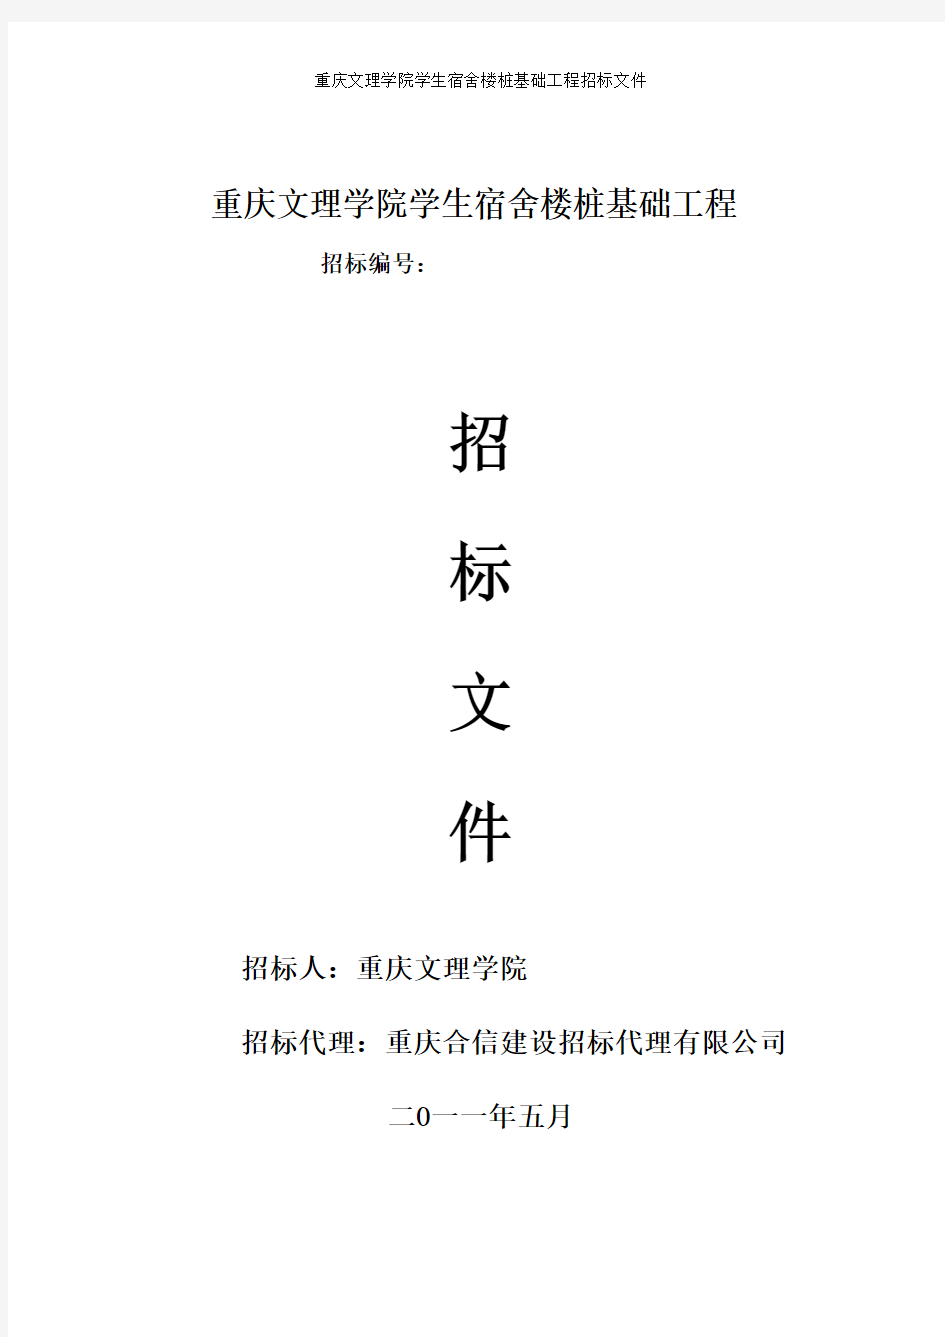 重庆文理学院学生宿舍楼桩基础工程招标文件